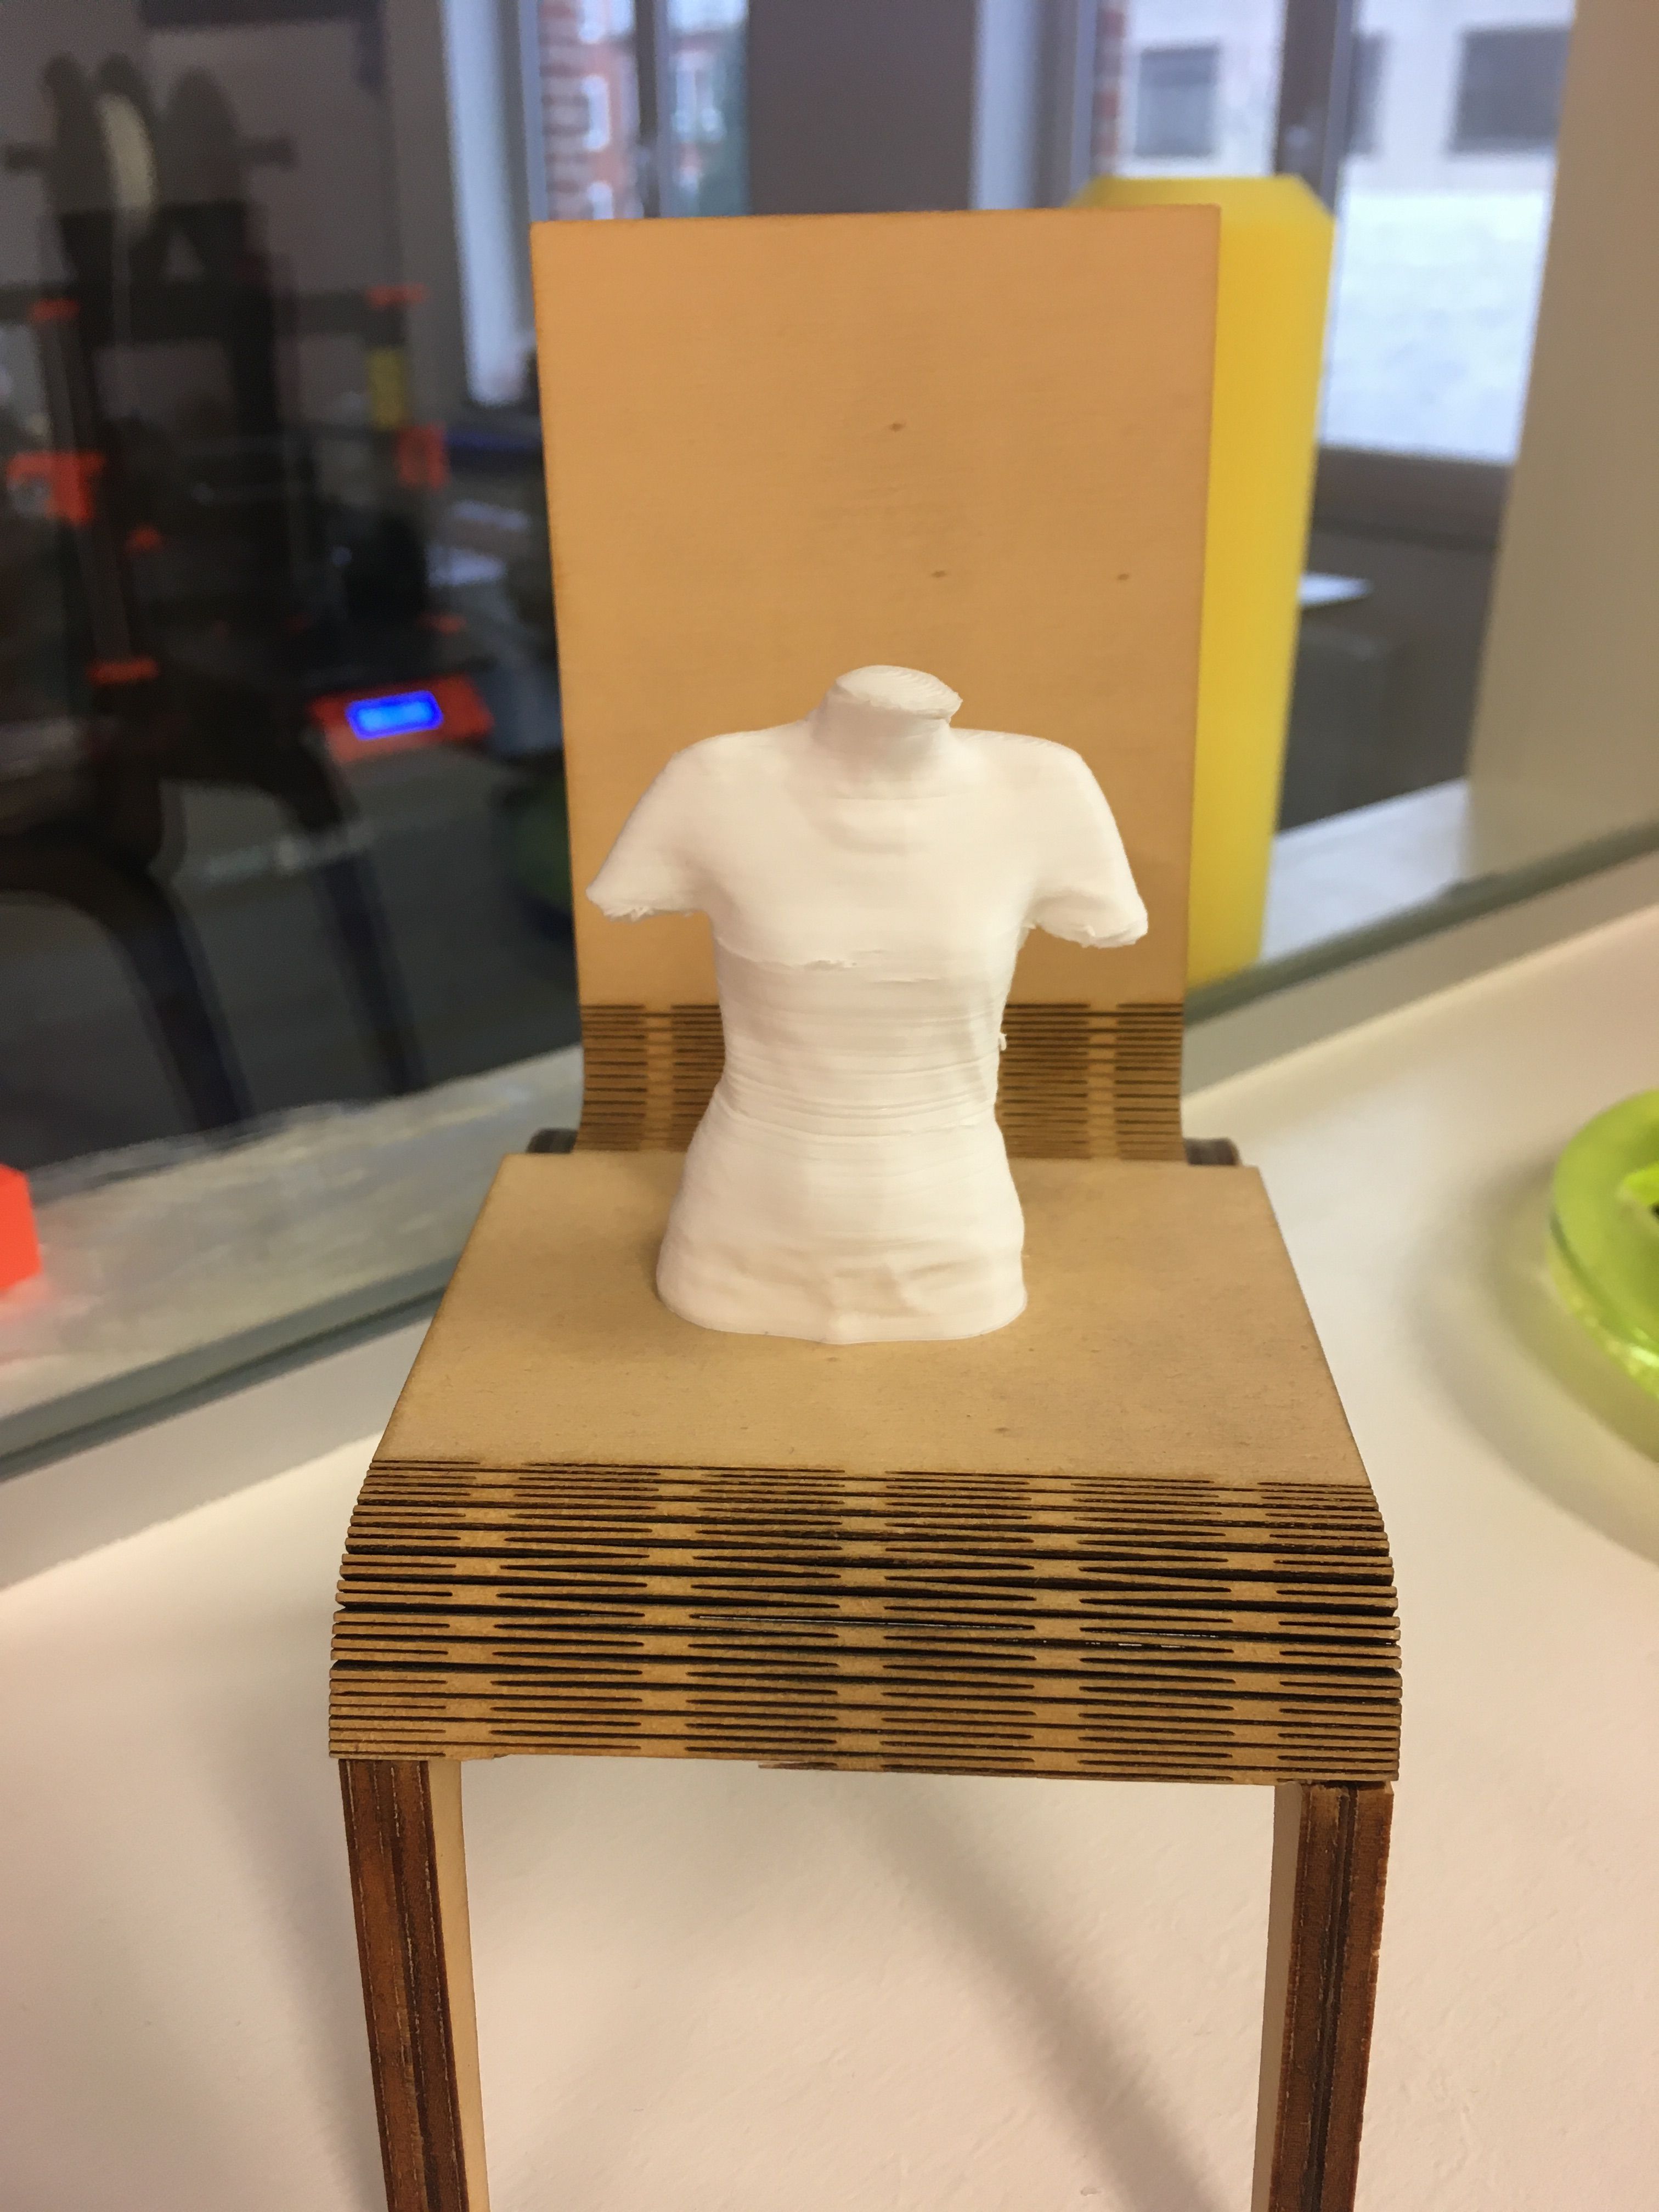 3D printed body